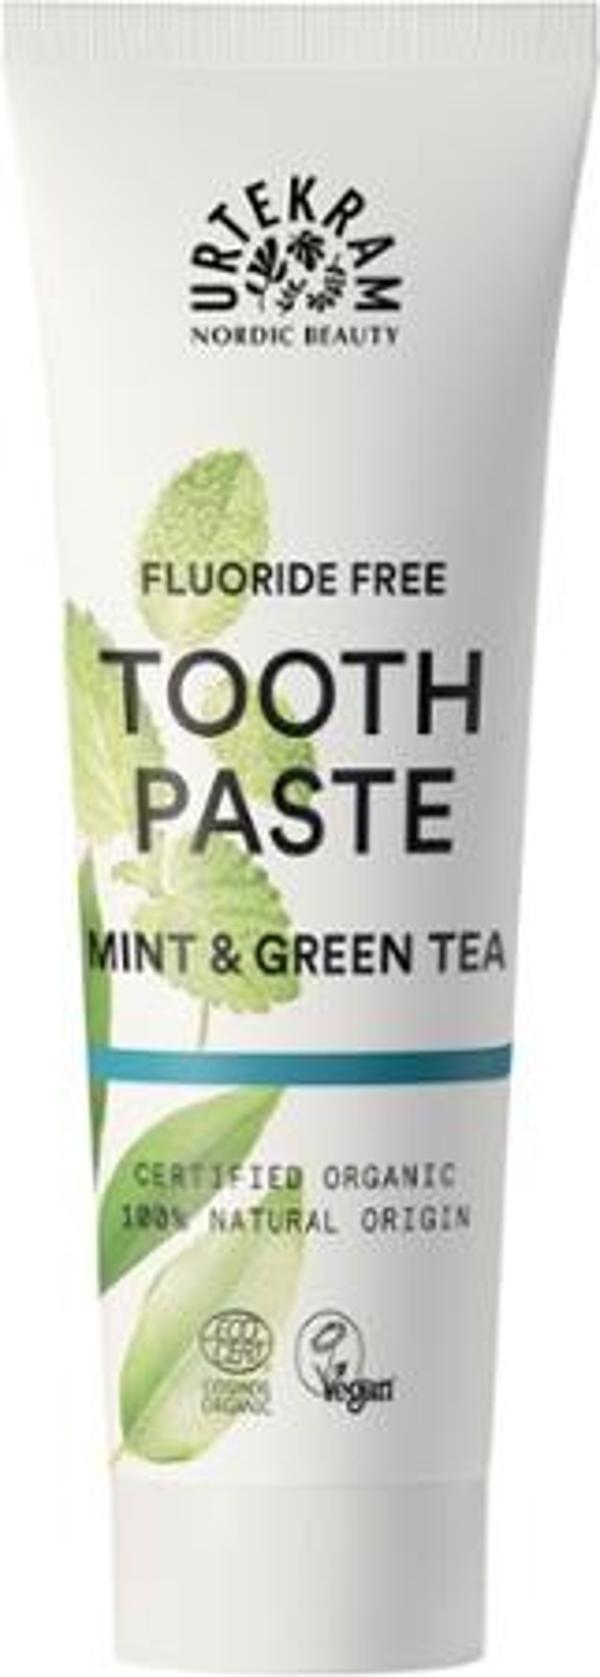 Produktfoto zu Mint Zahnpasta mit Fluorid